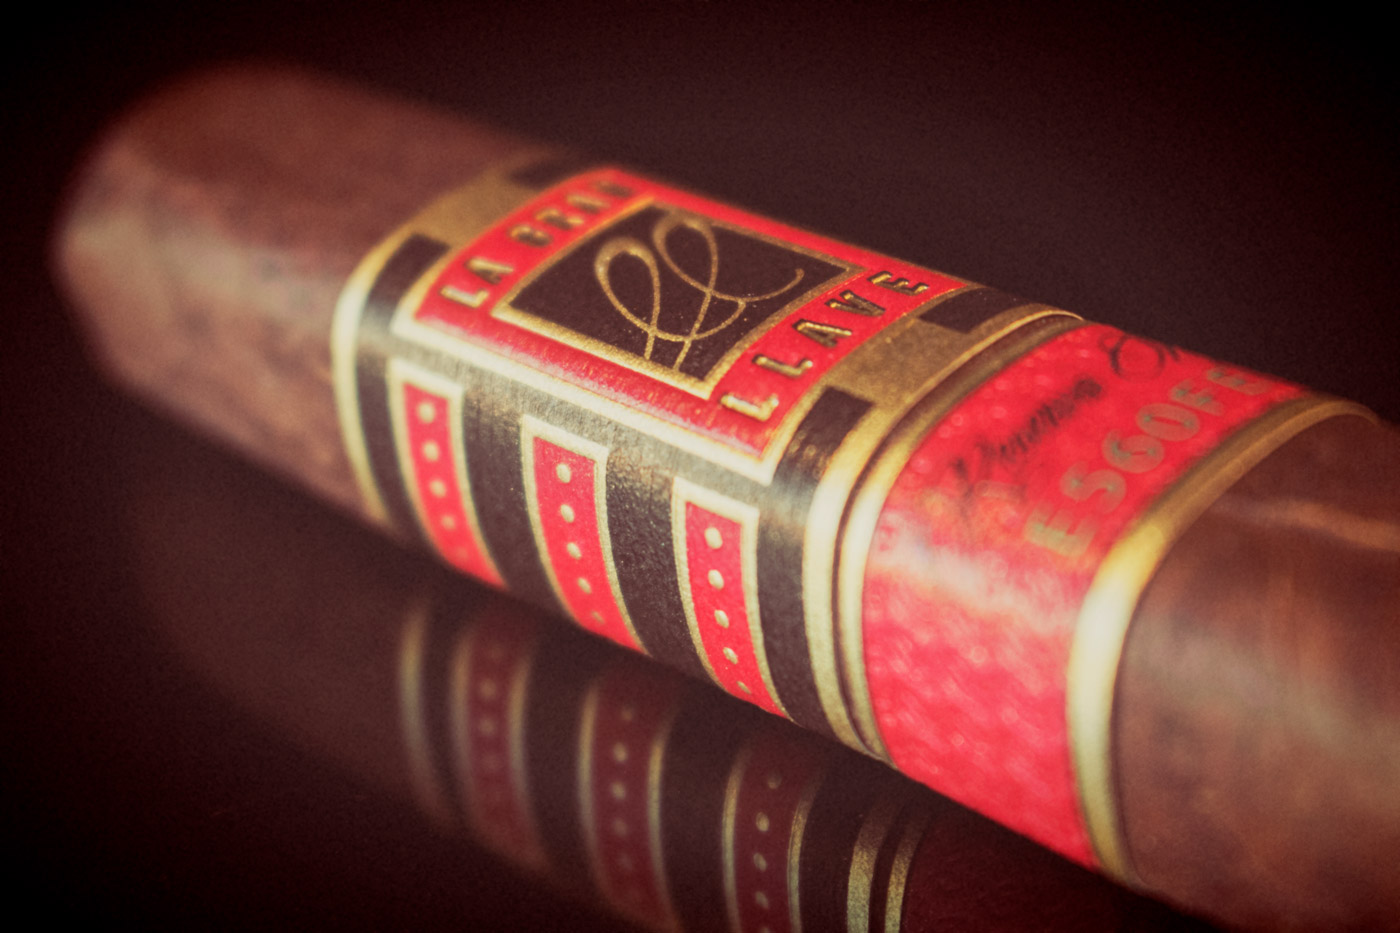 La Gran Llave Robusto cigar review